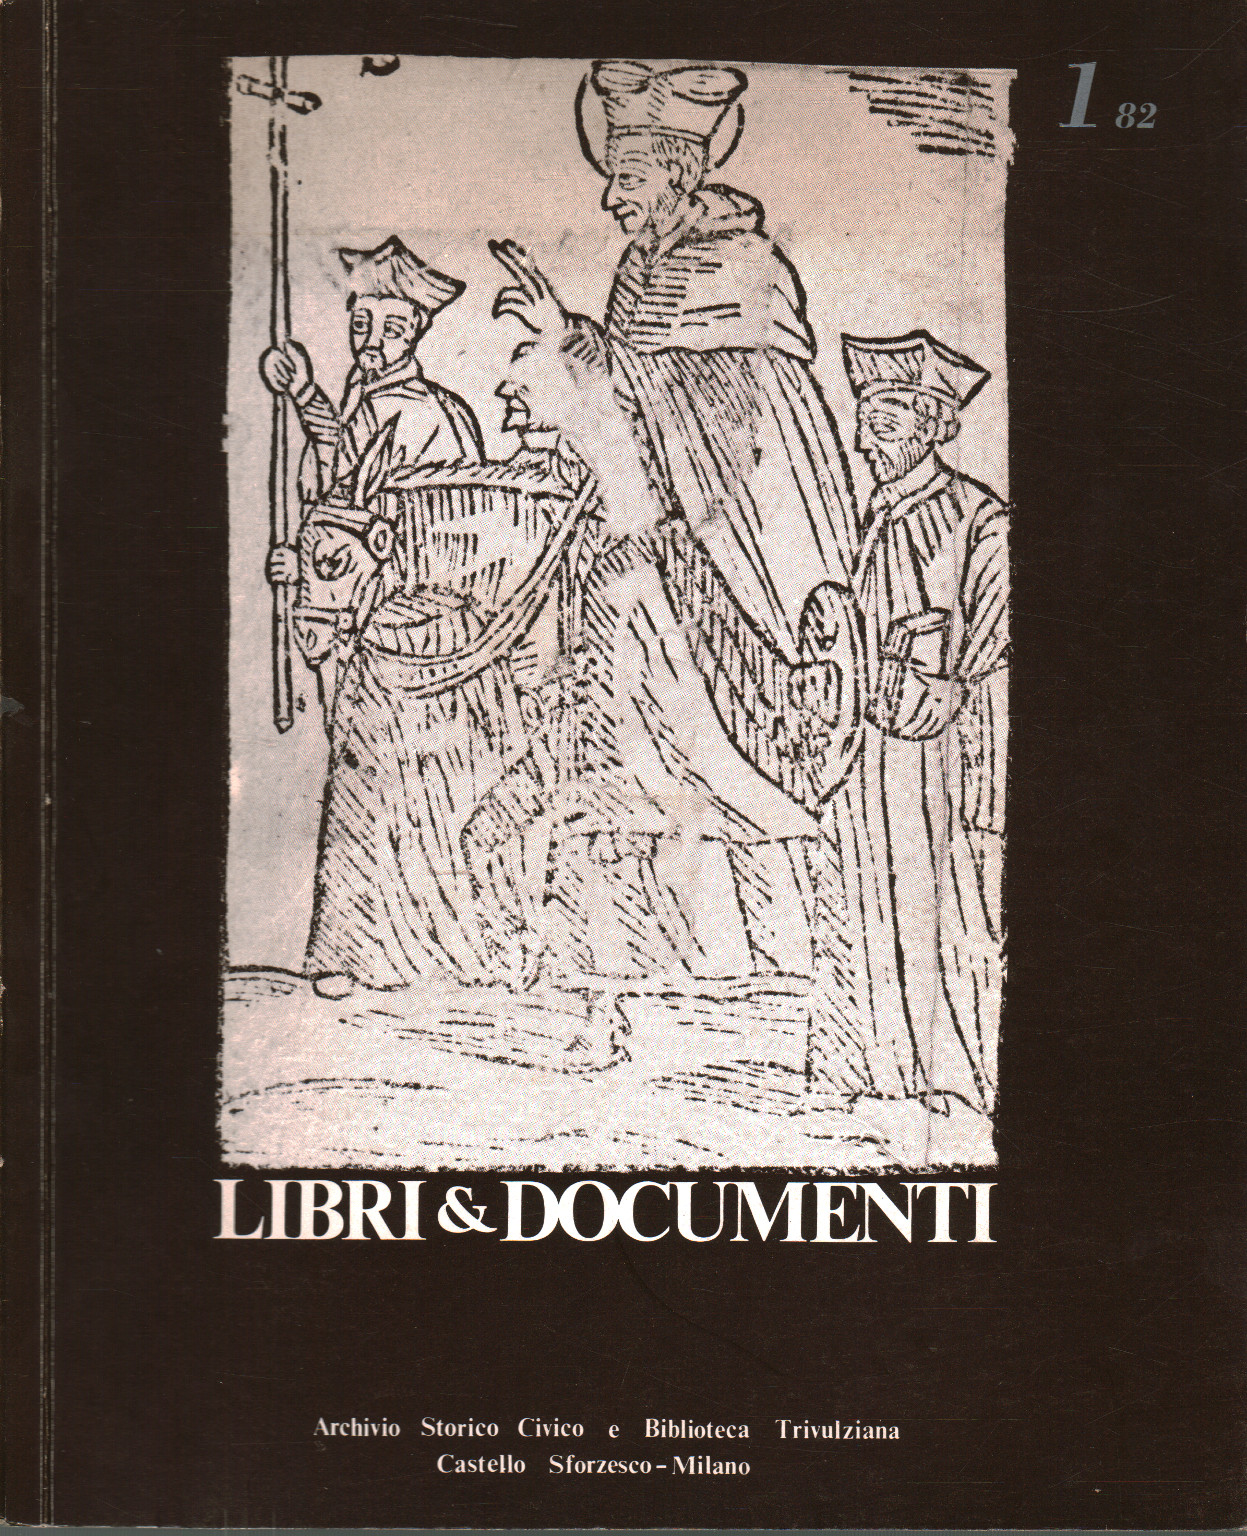 Bücher & Dokumente, Jahr VIII/ Nummer 1/1982, AA.VV